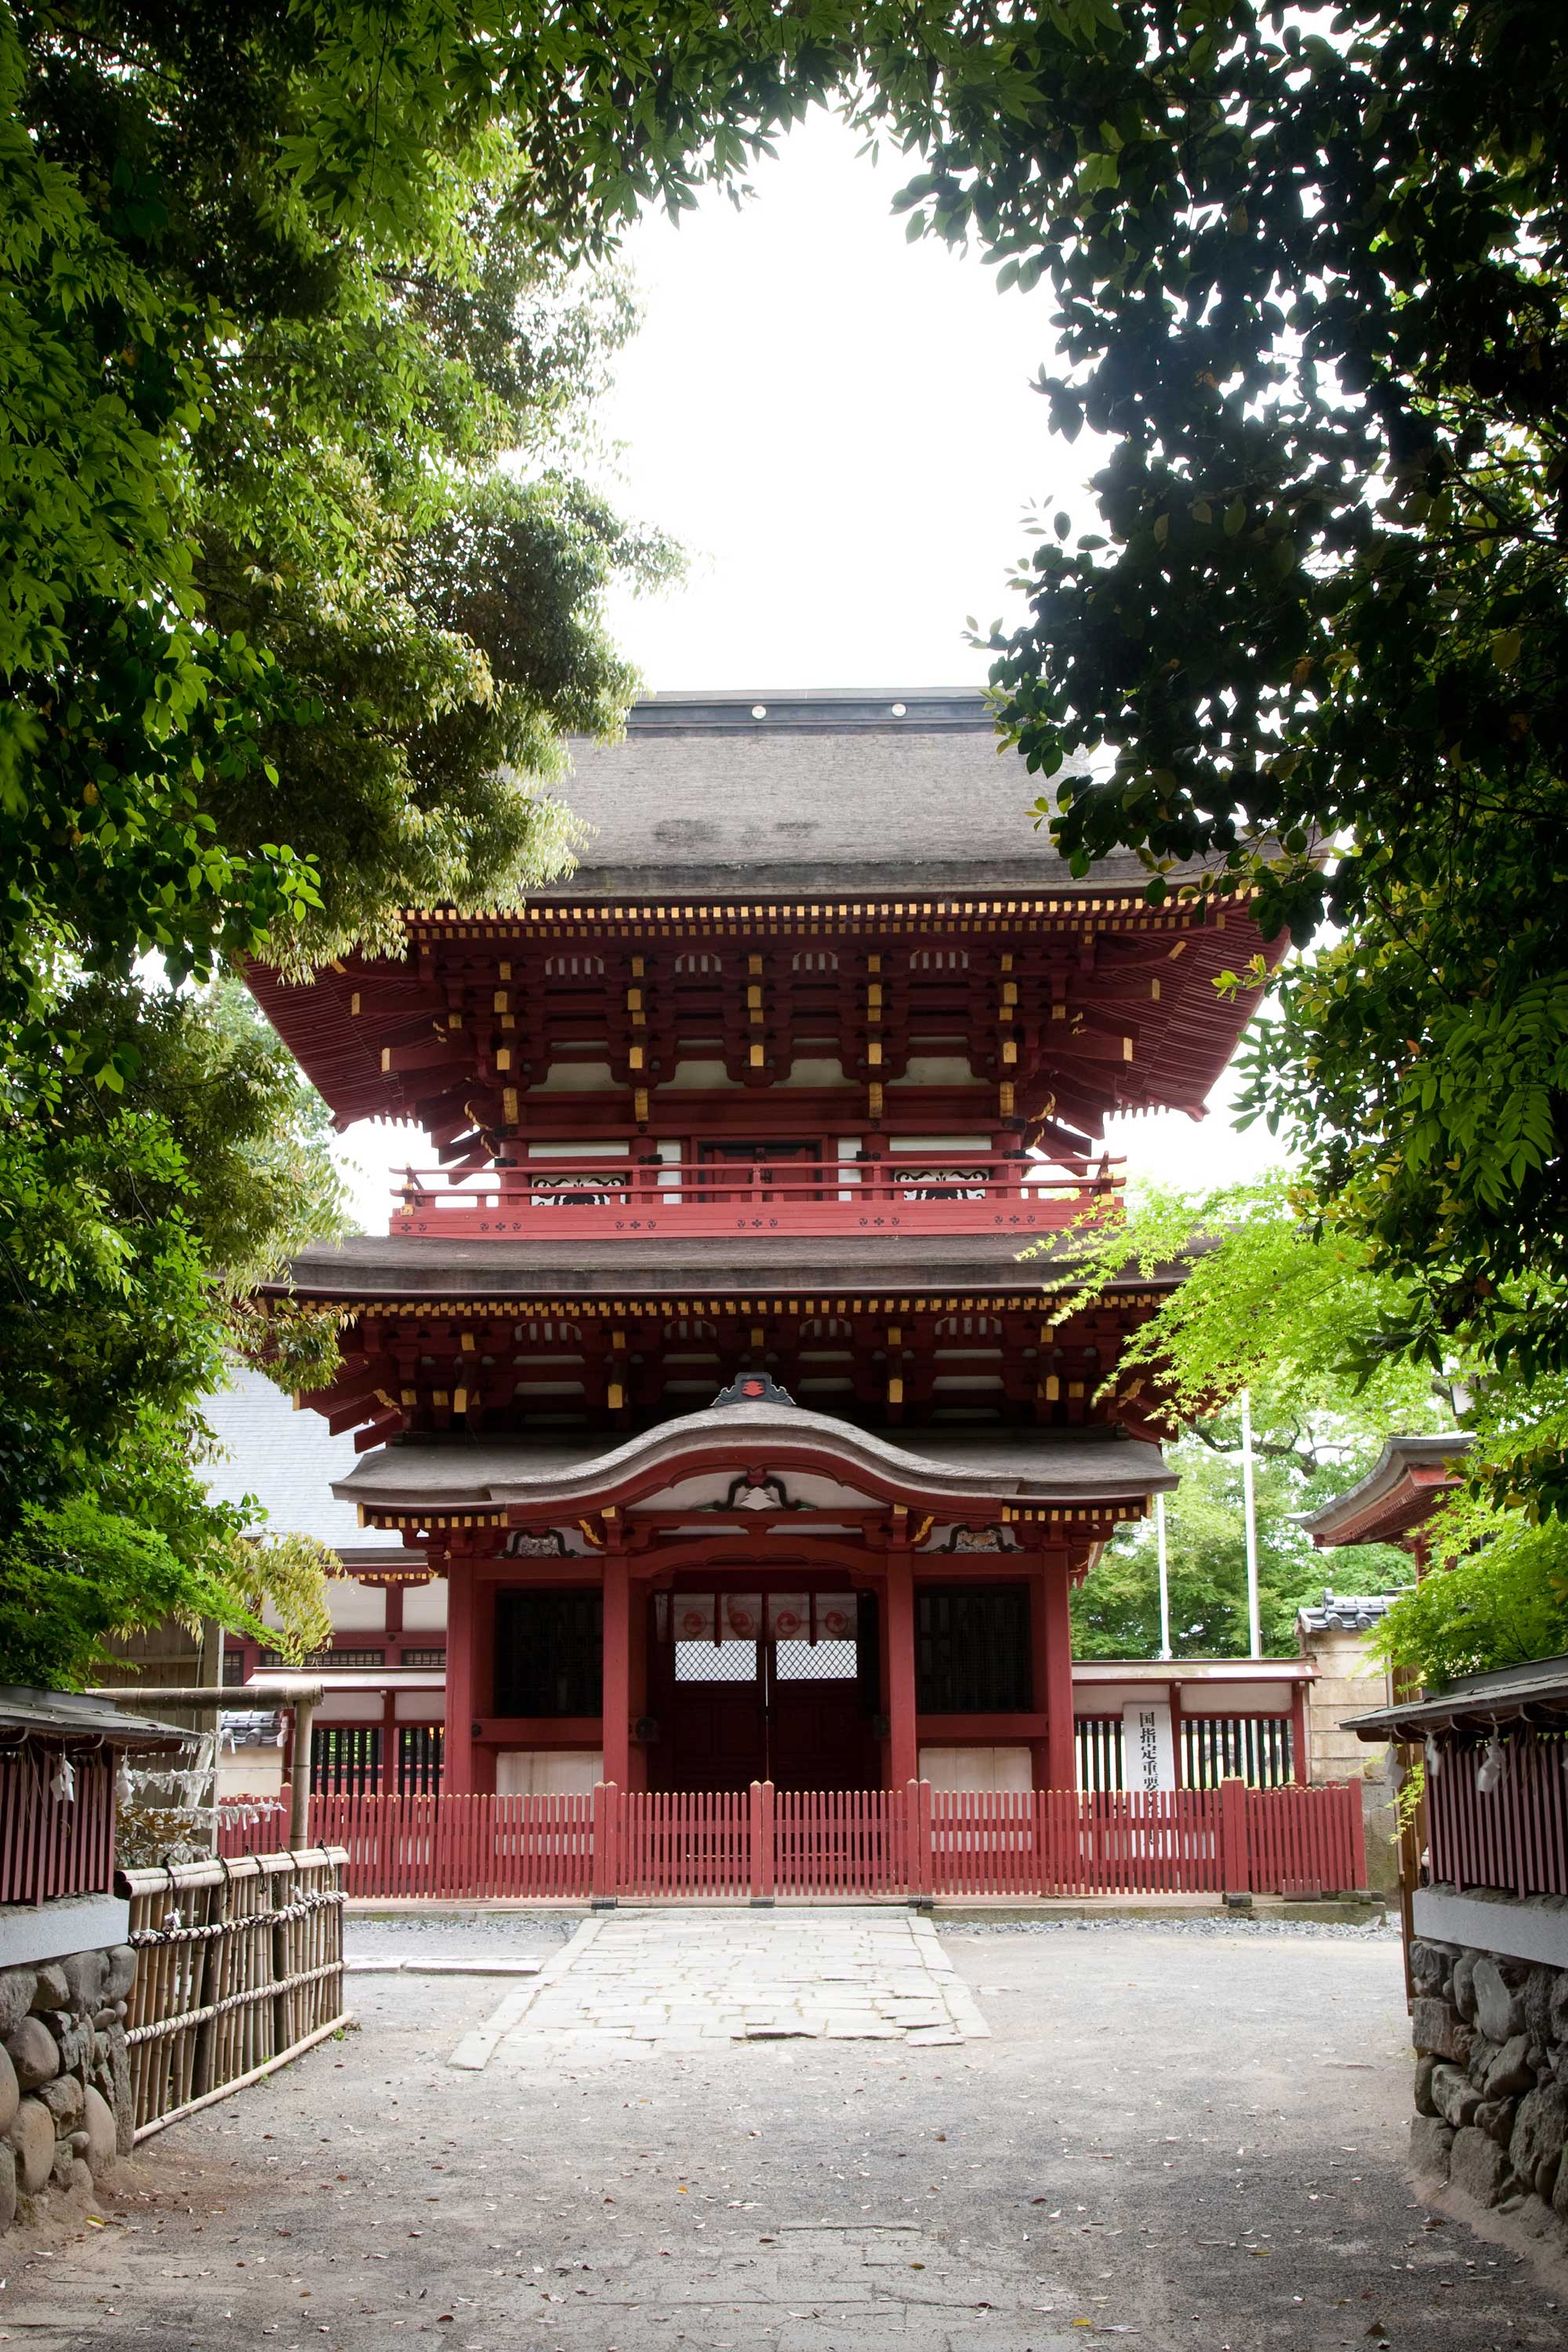 宇佐神宮の元宮の一つでもある薦神社の楼門。